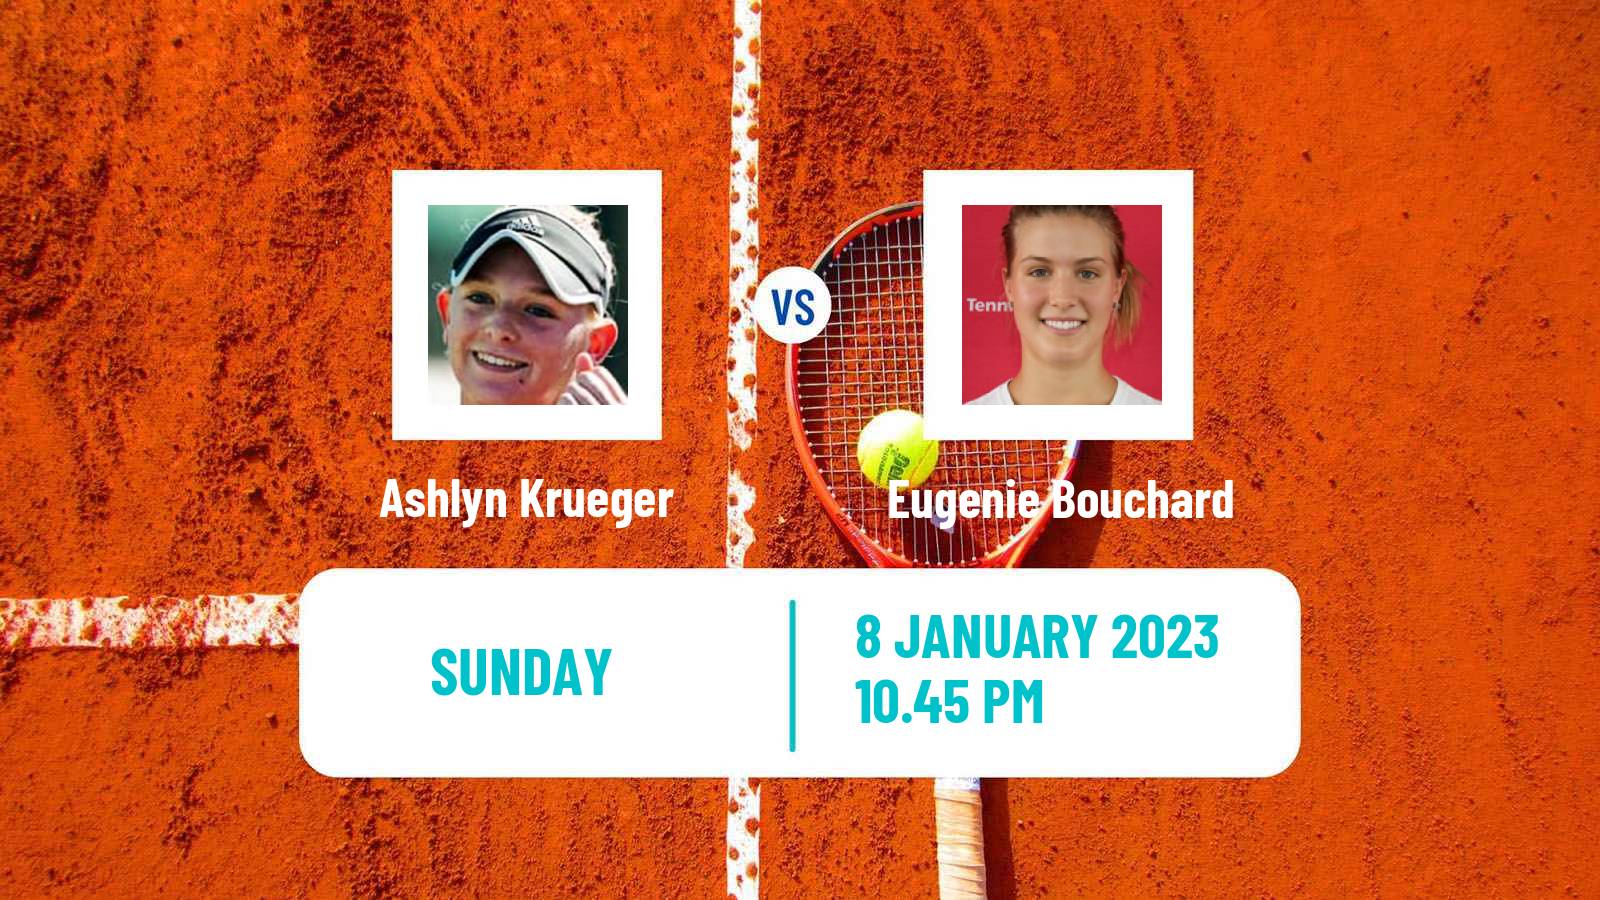 Tennis WTA Australian Open Ashlyn Krueger - Eugenie Bouchard